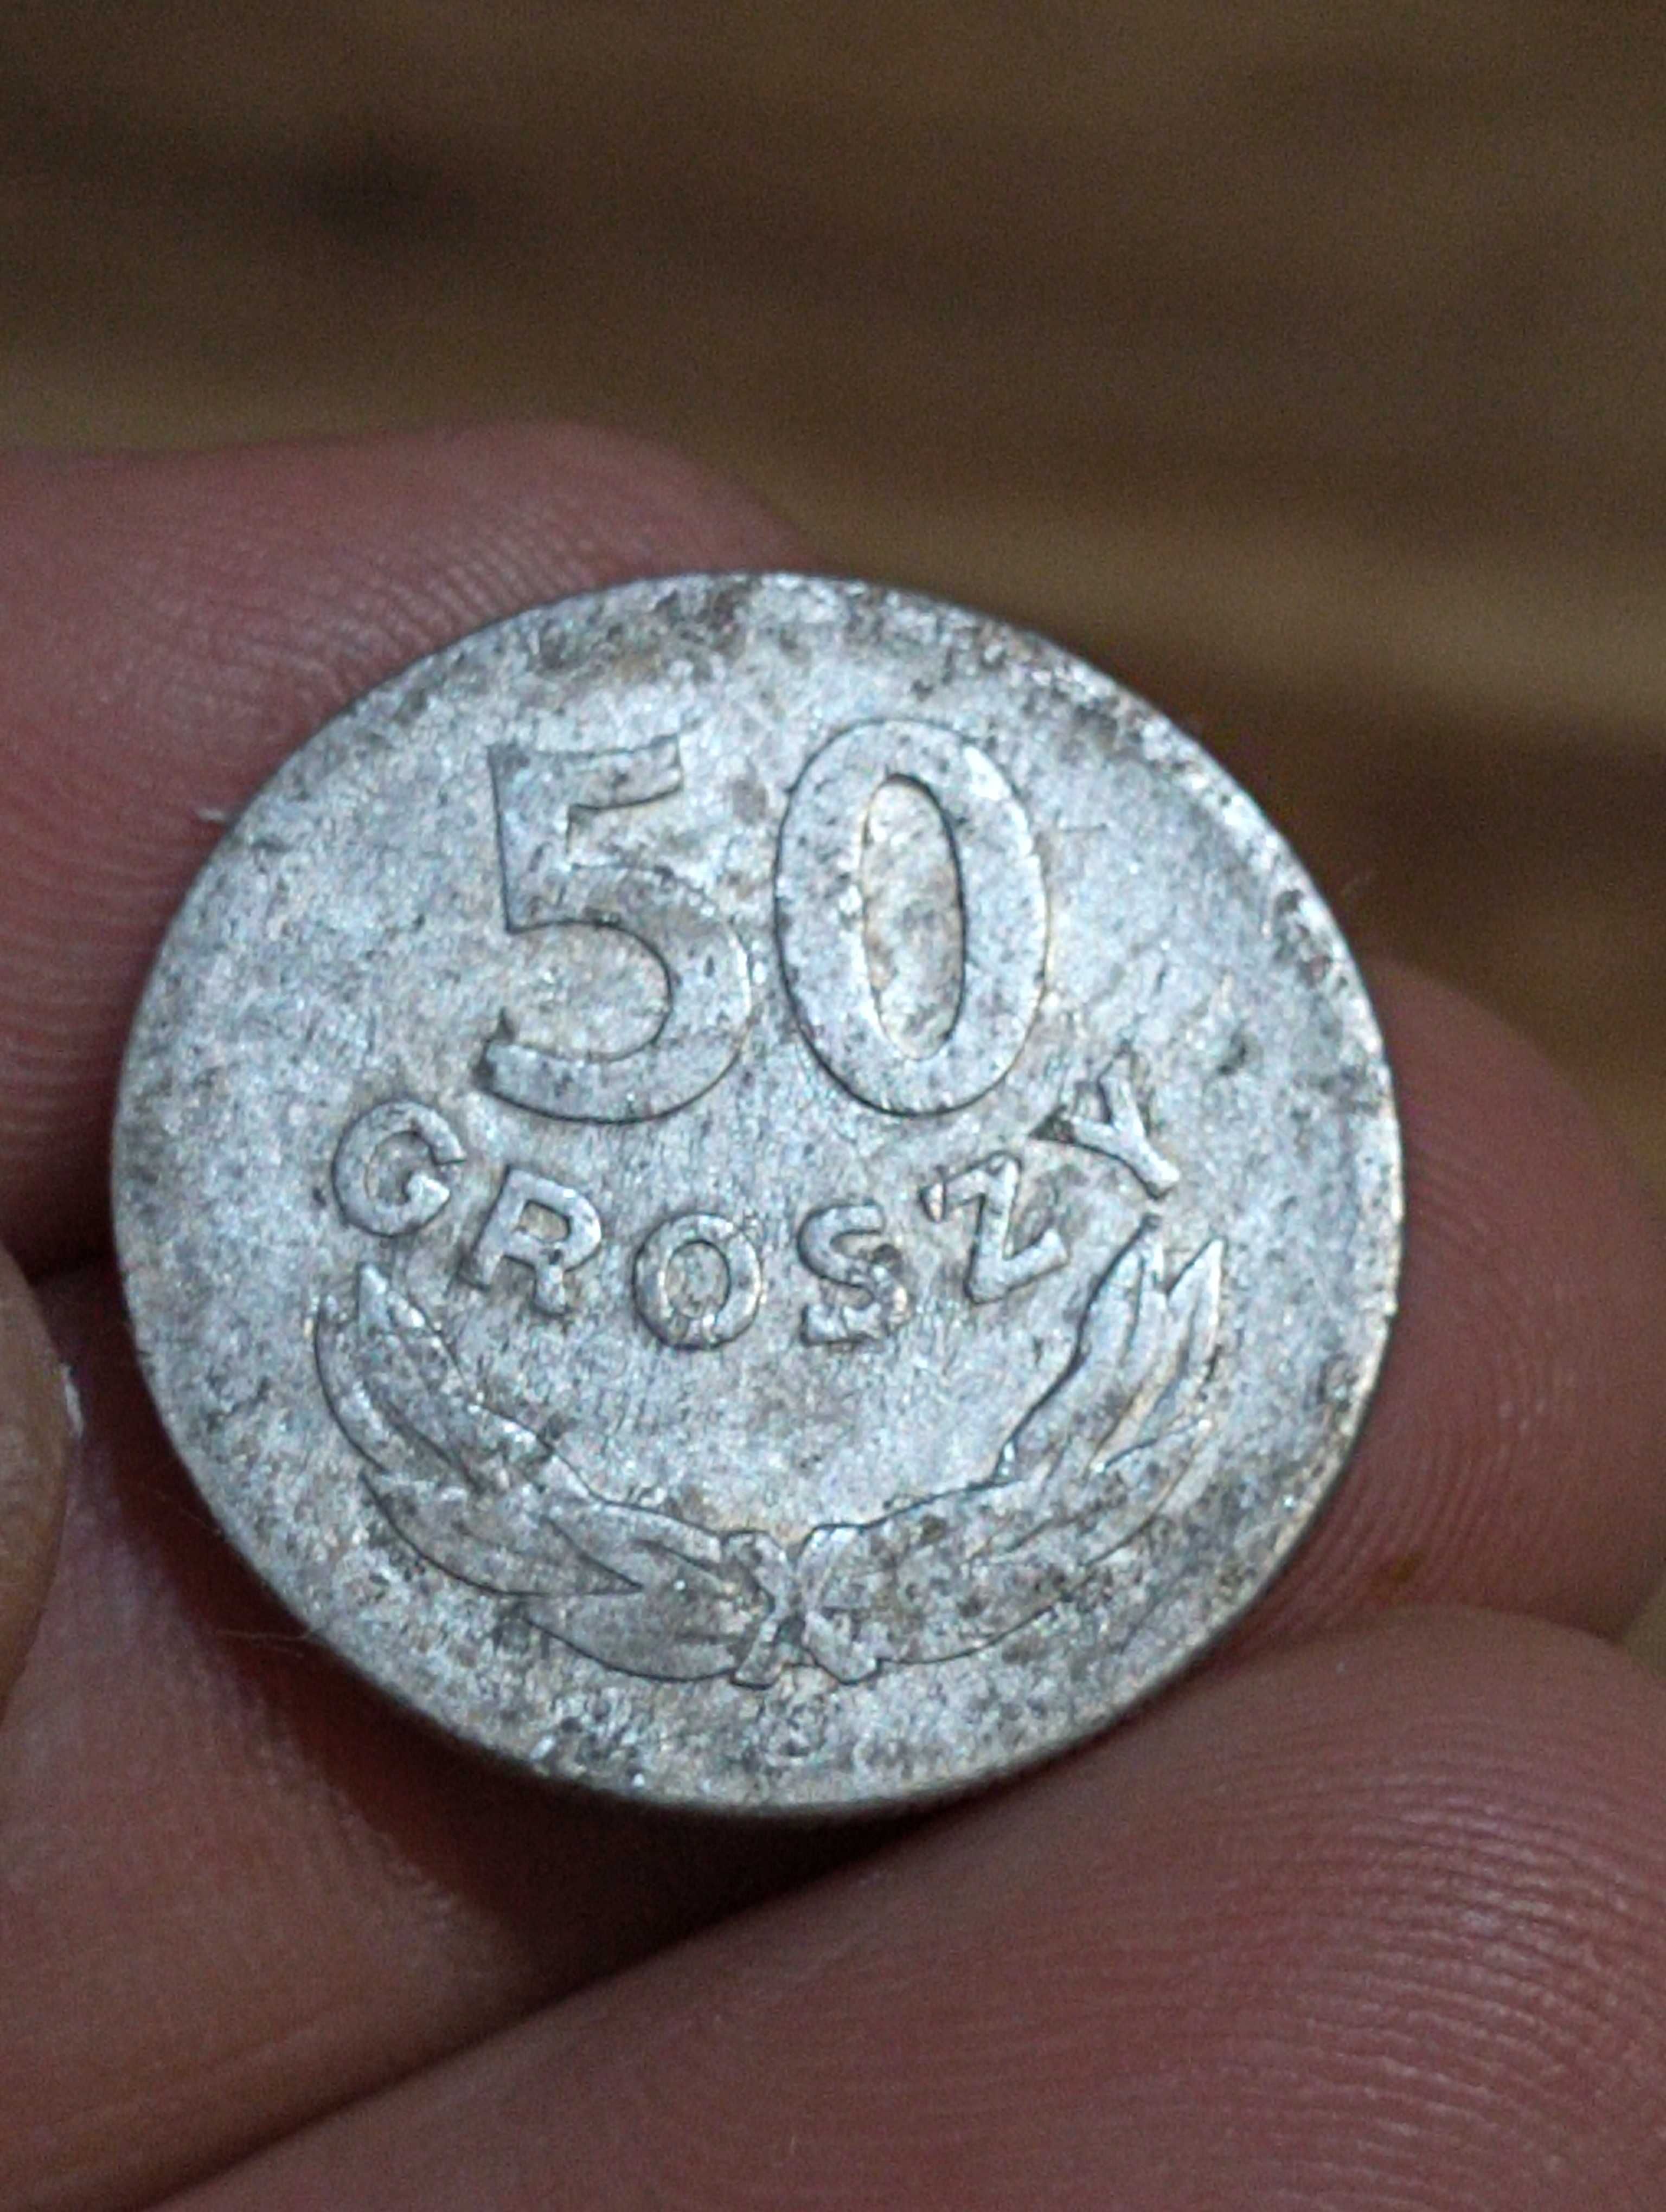 Sprzedam monete osma 50 groszy 1965 rok